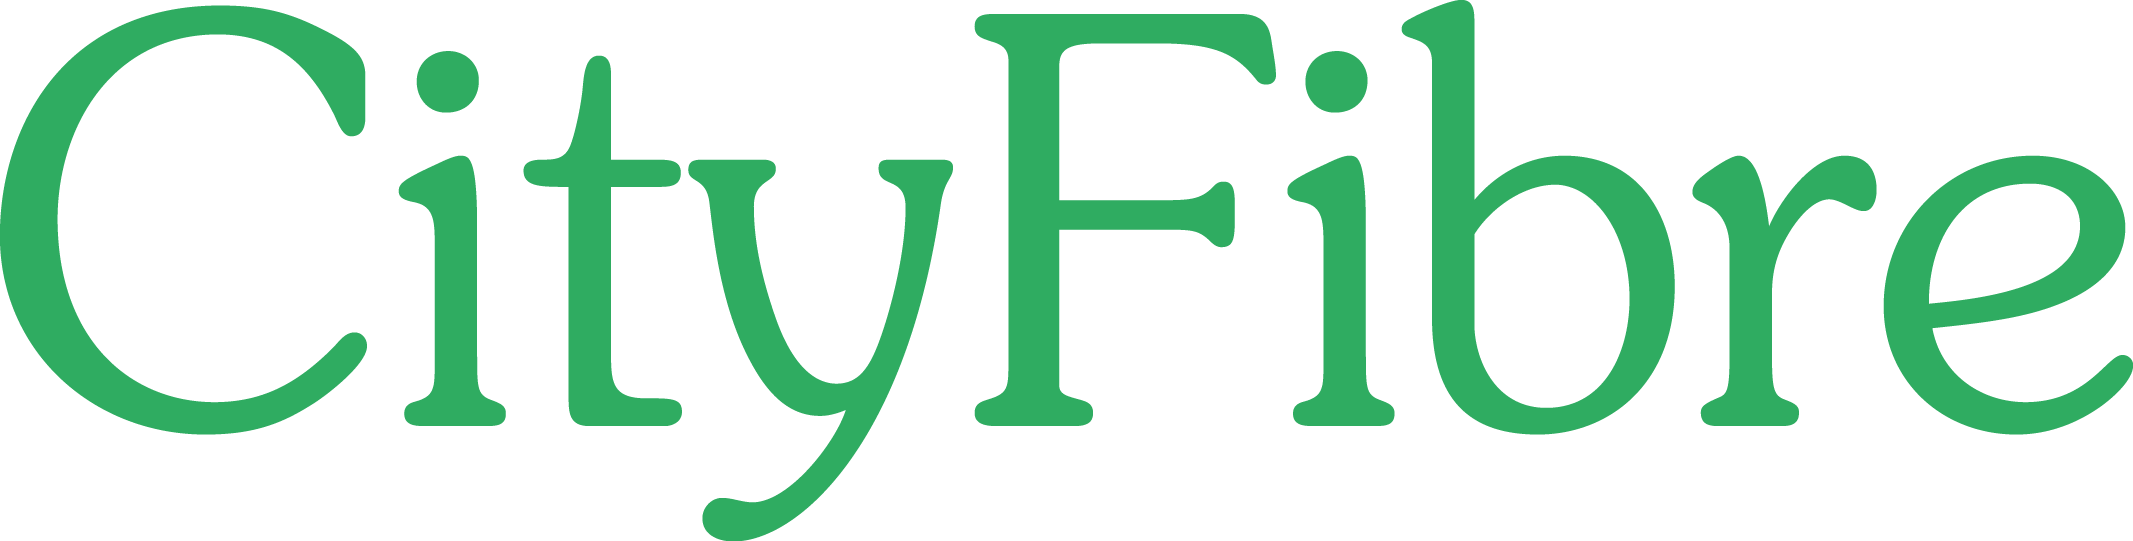 cityfibre logo